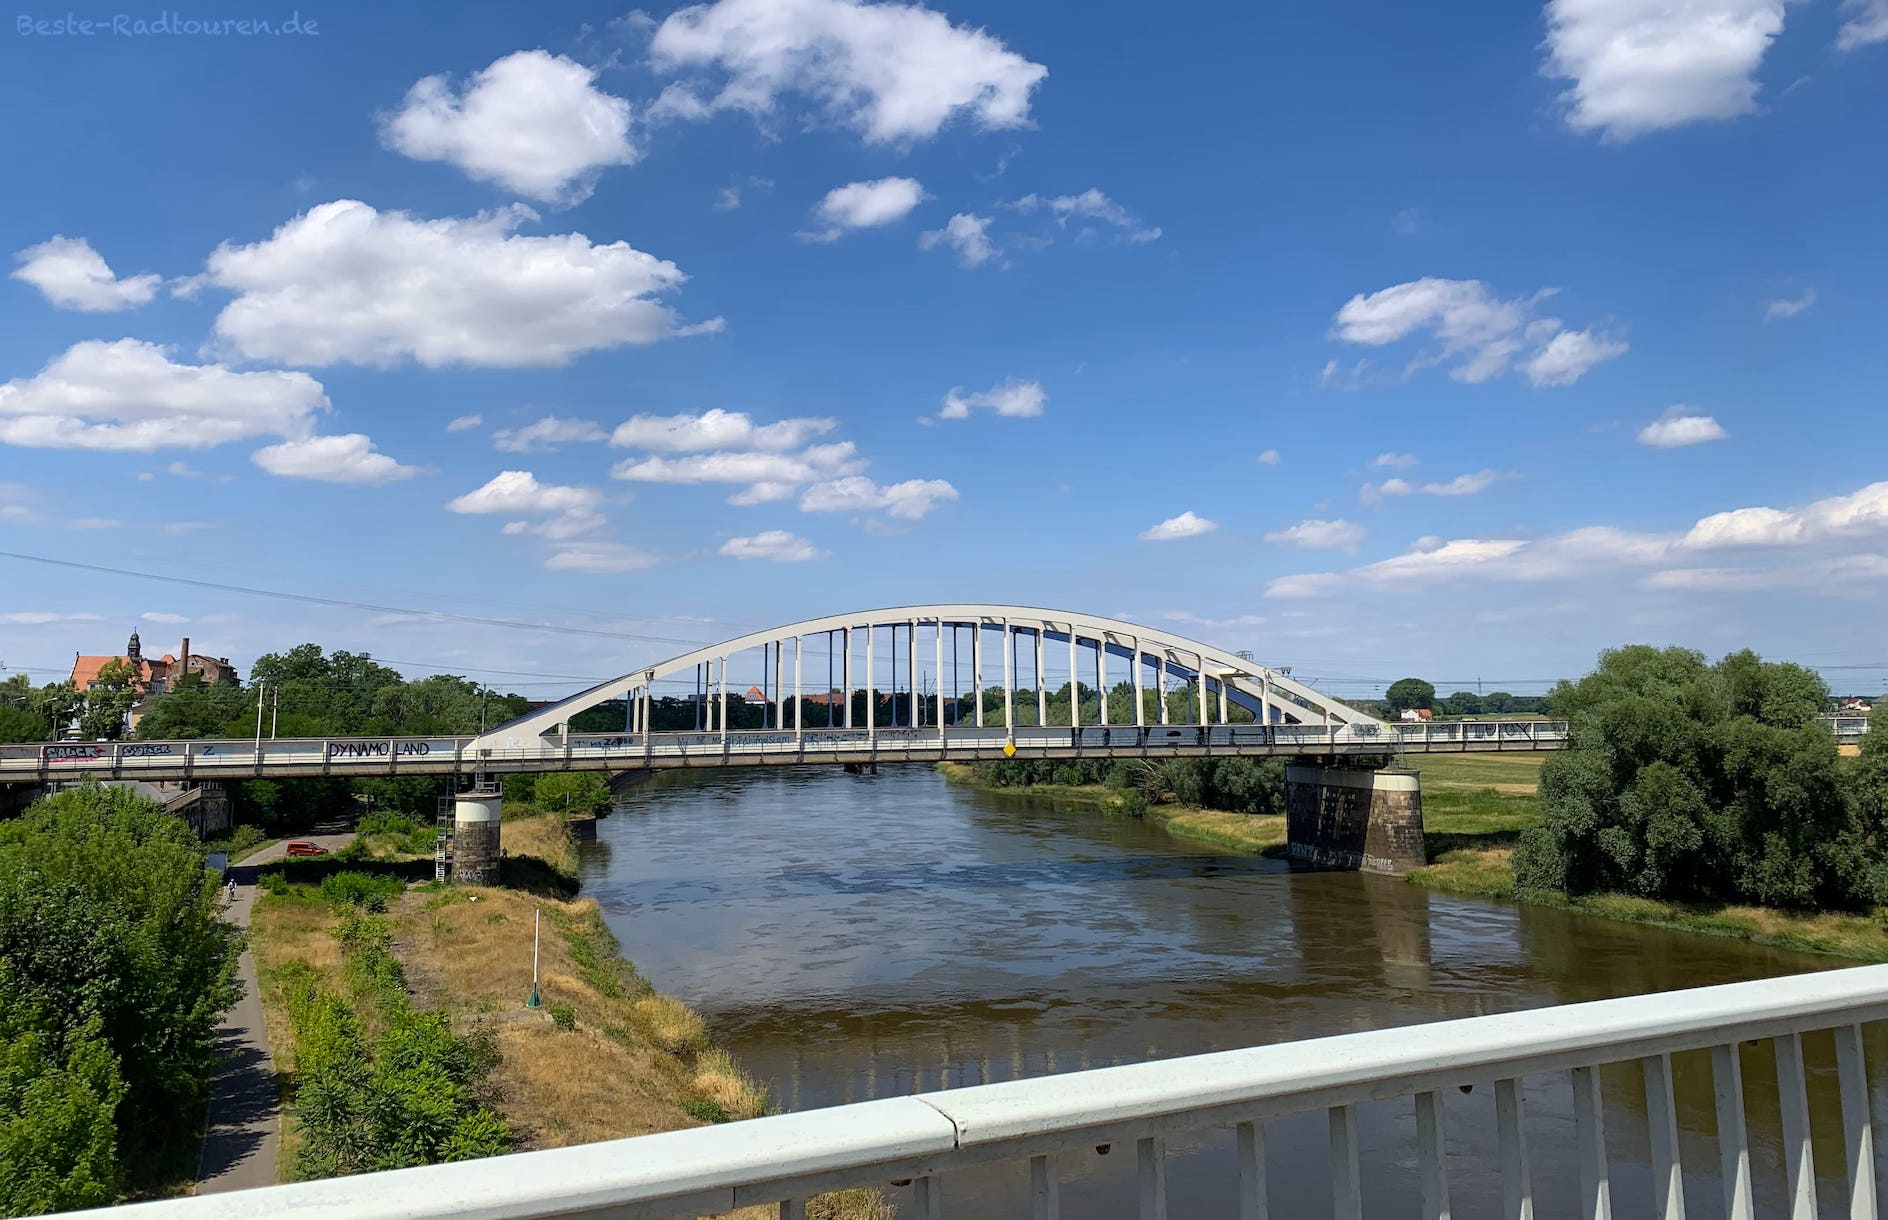 Foto von der Elbebrücke Riesa aus: Eisenbahnbrücke über die Elbe